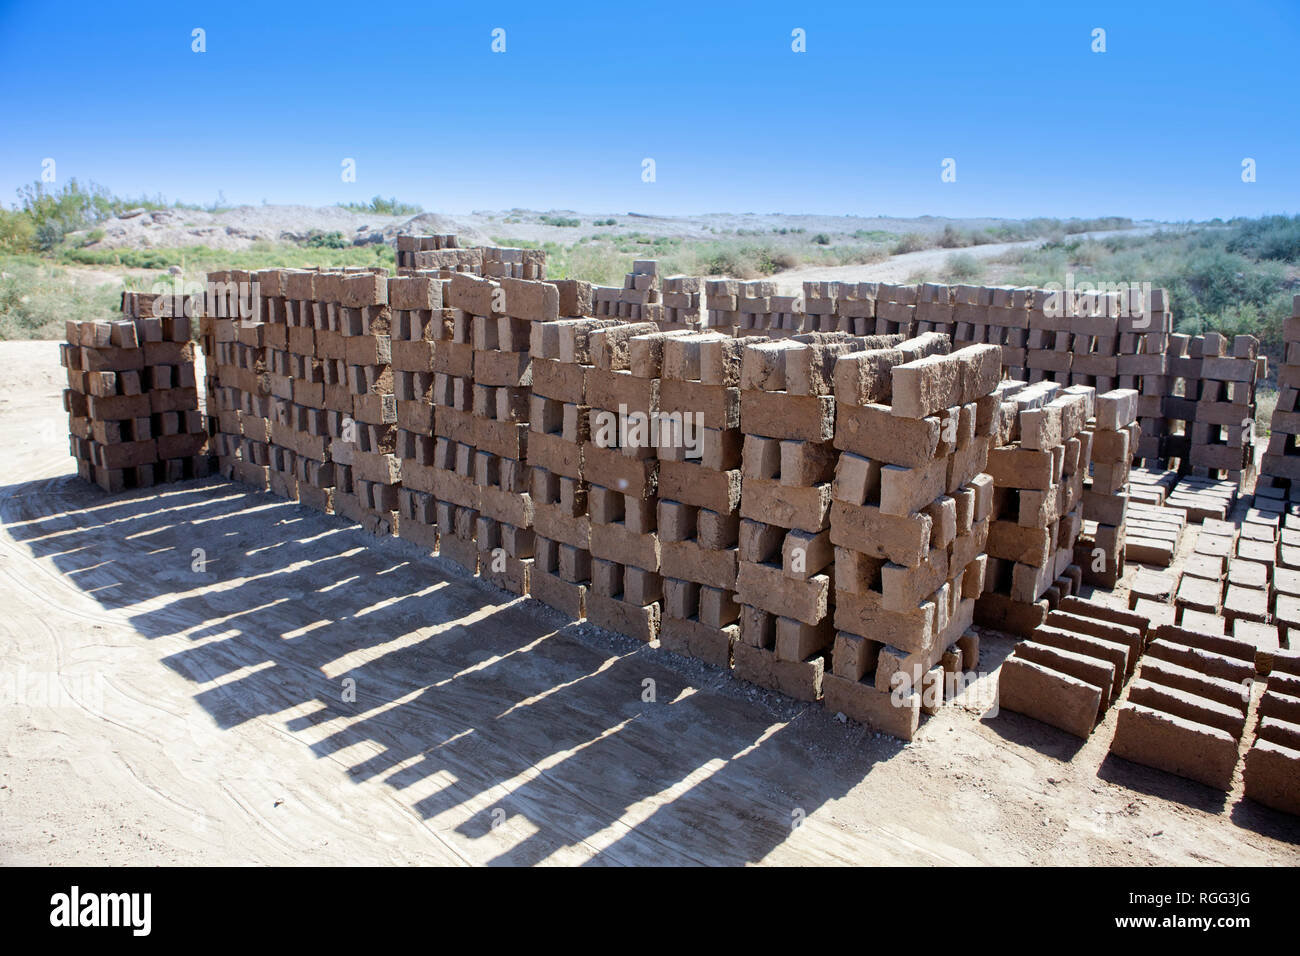 Handgemachte Ziegel für Kyzyl - Kala Reparatur in Kyzylkum Wüste, Usbekistan Stockfoto